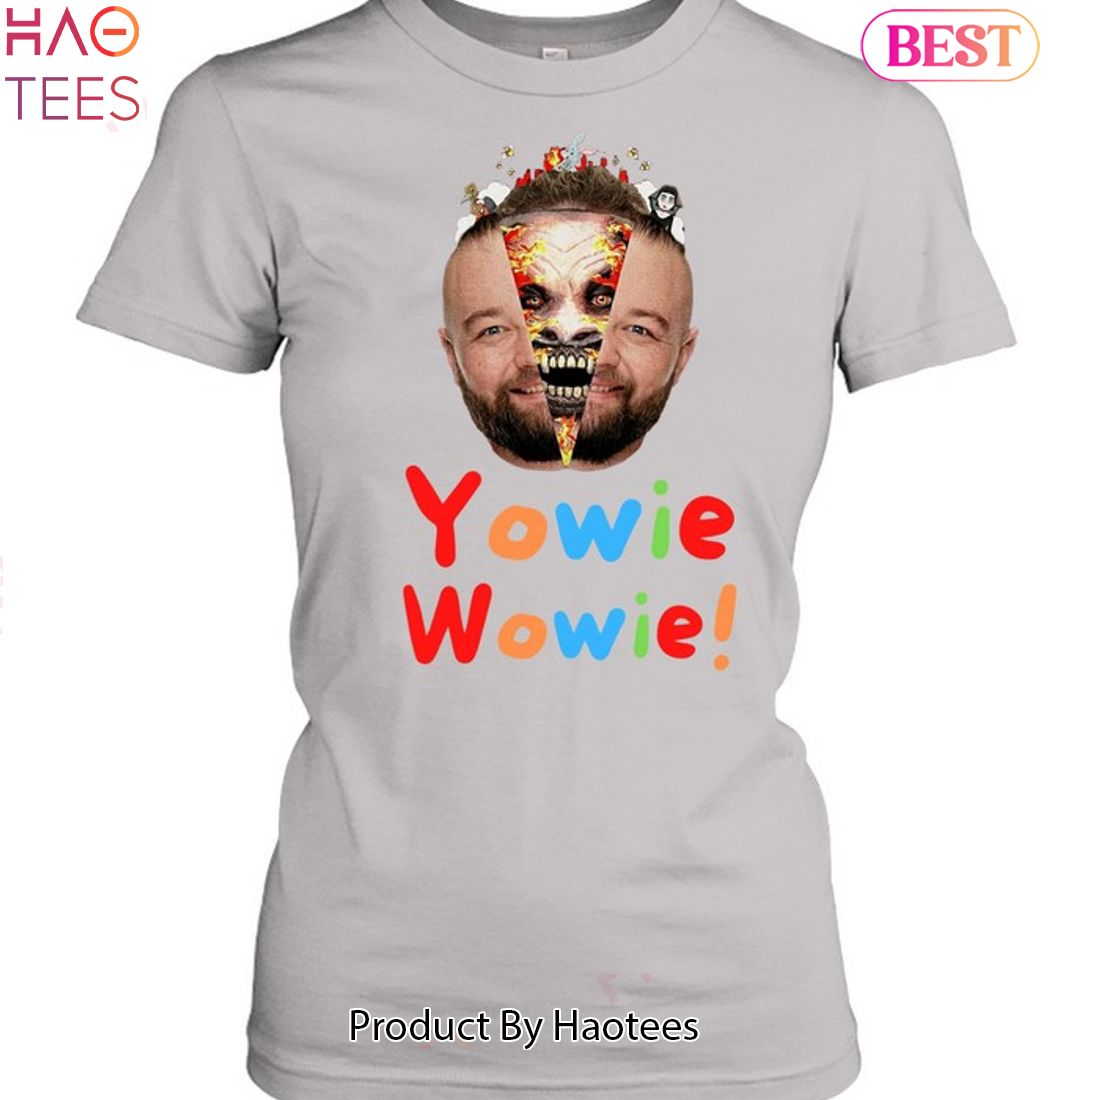 Bray Wyatt's YOWIE WOWIE Compilation! 